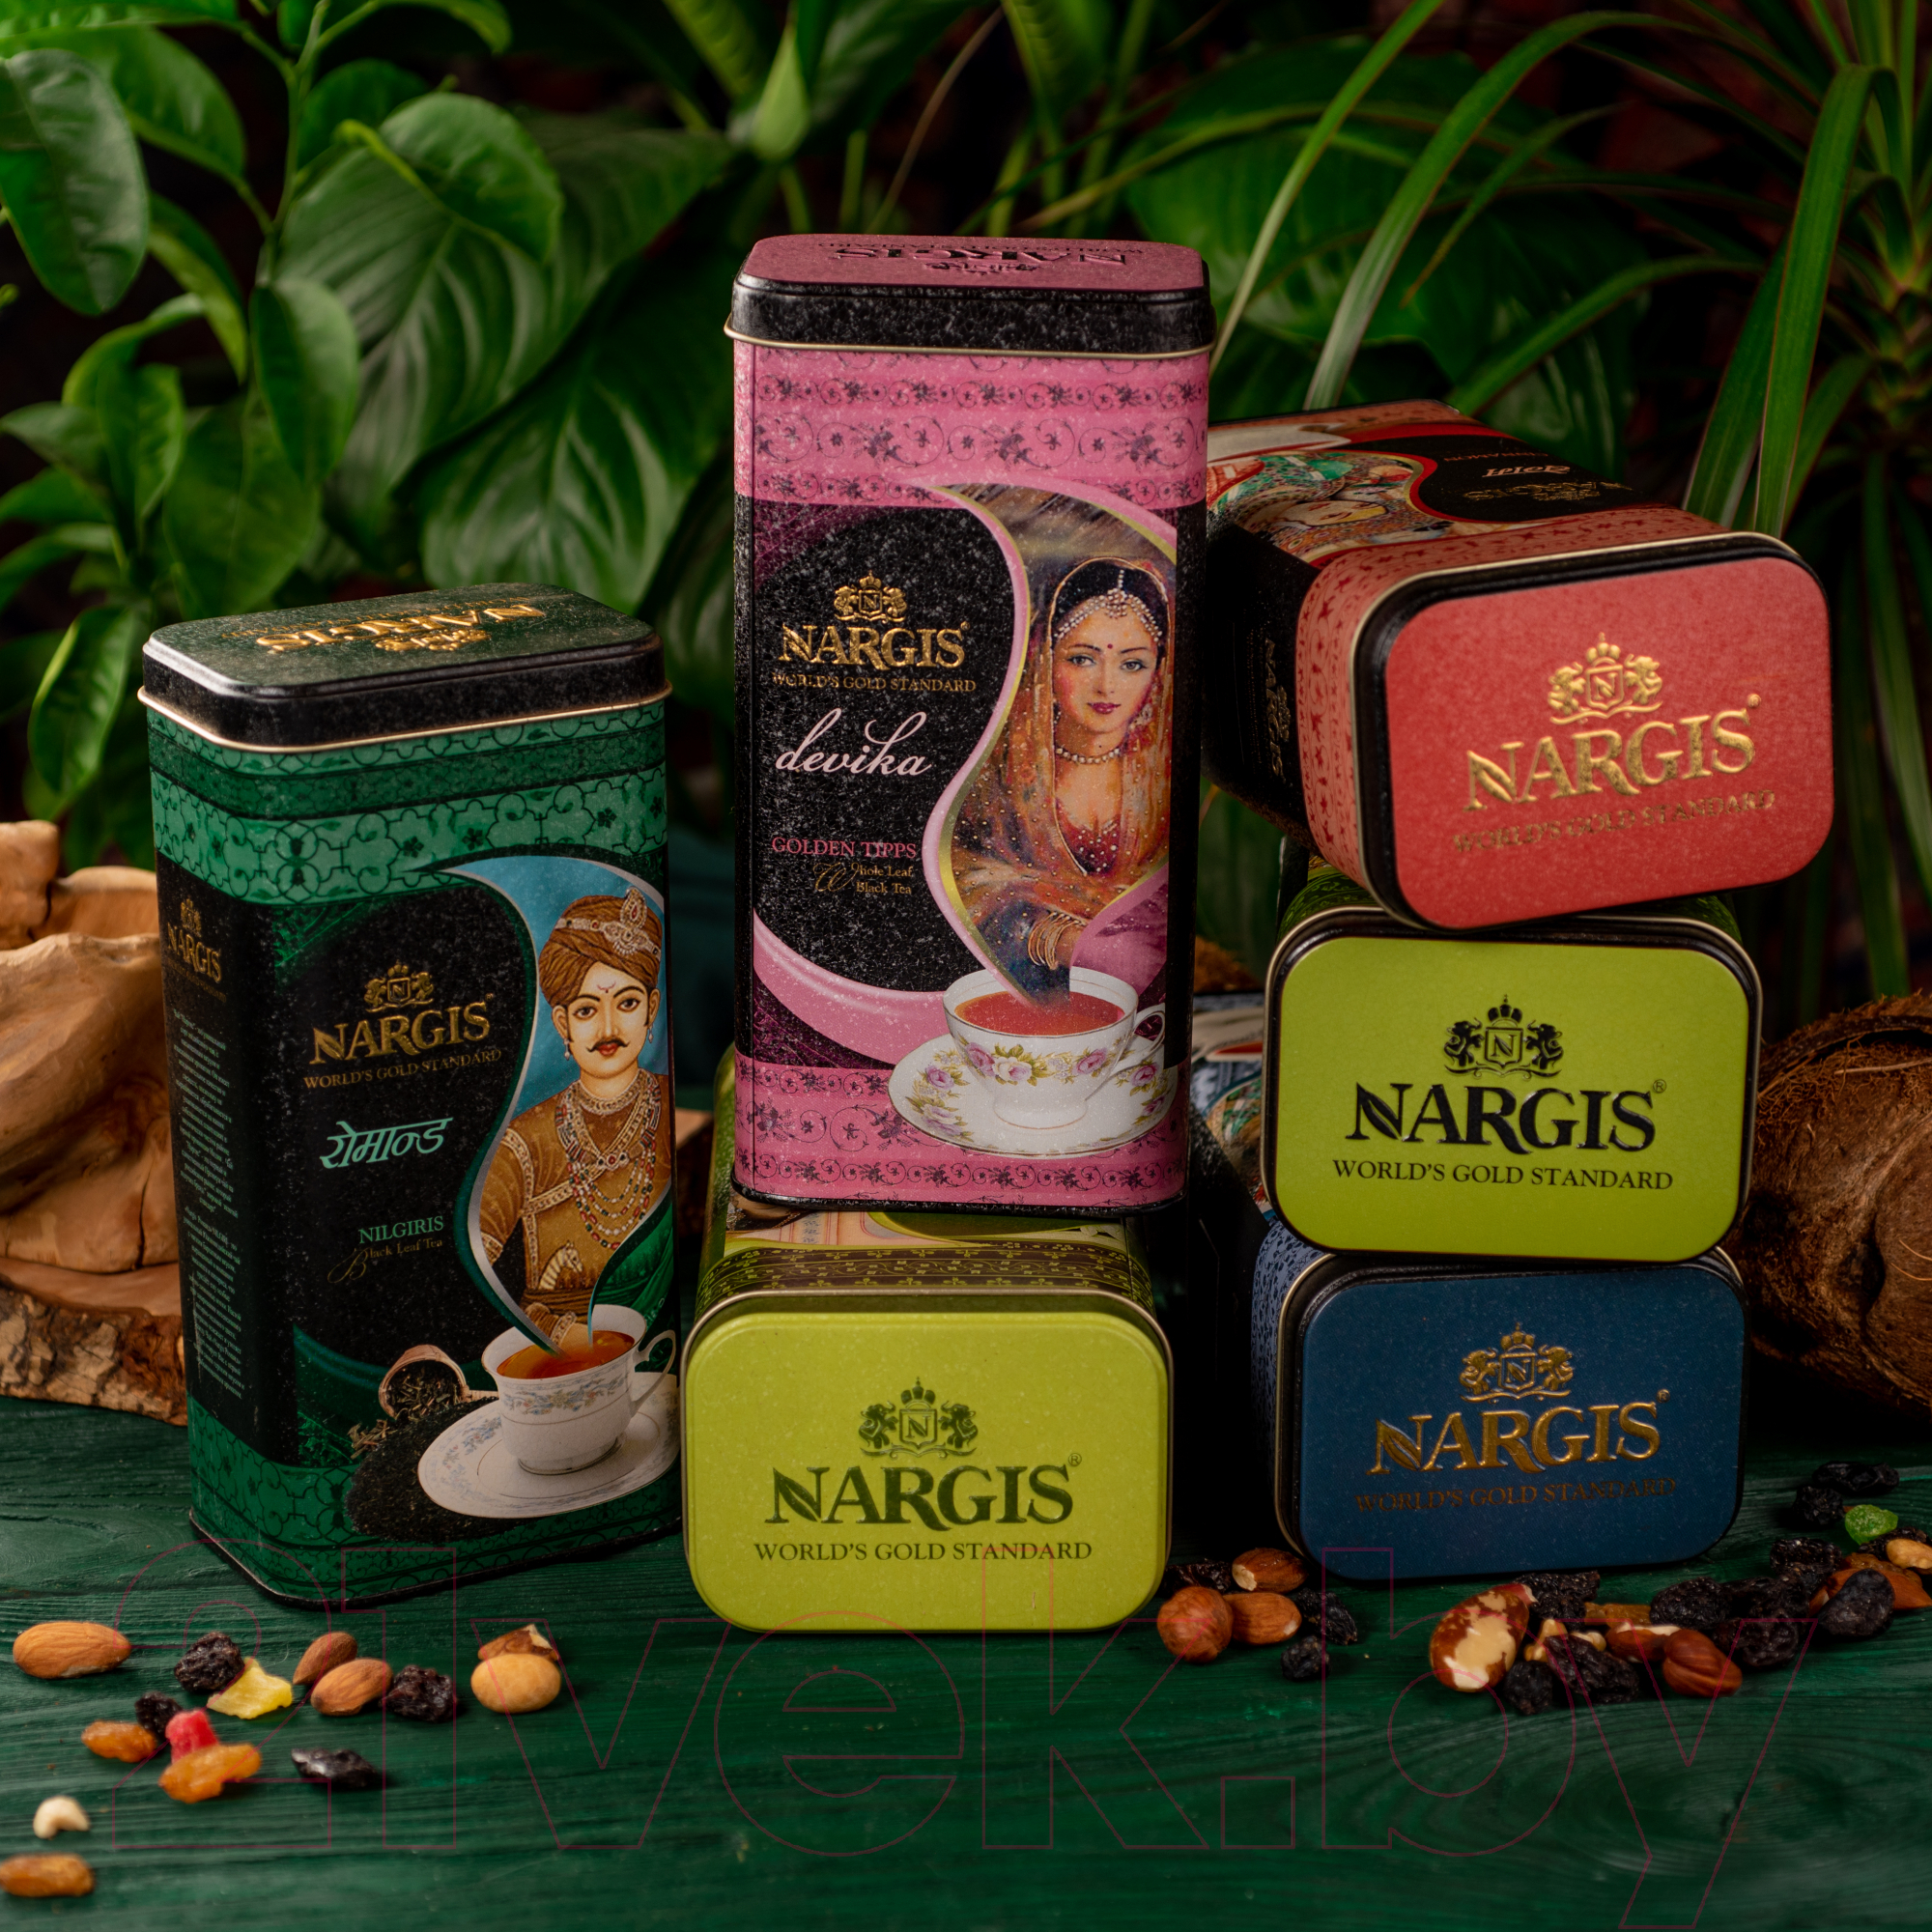 Чай листовой Nargis Devika Assam / 14405 (200г )